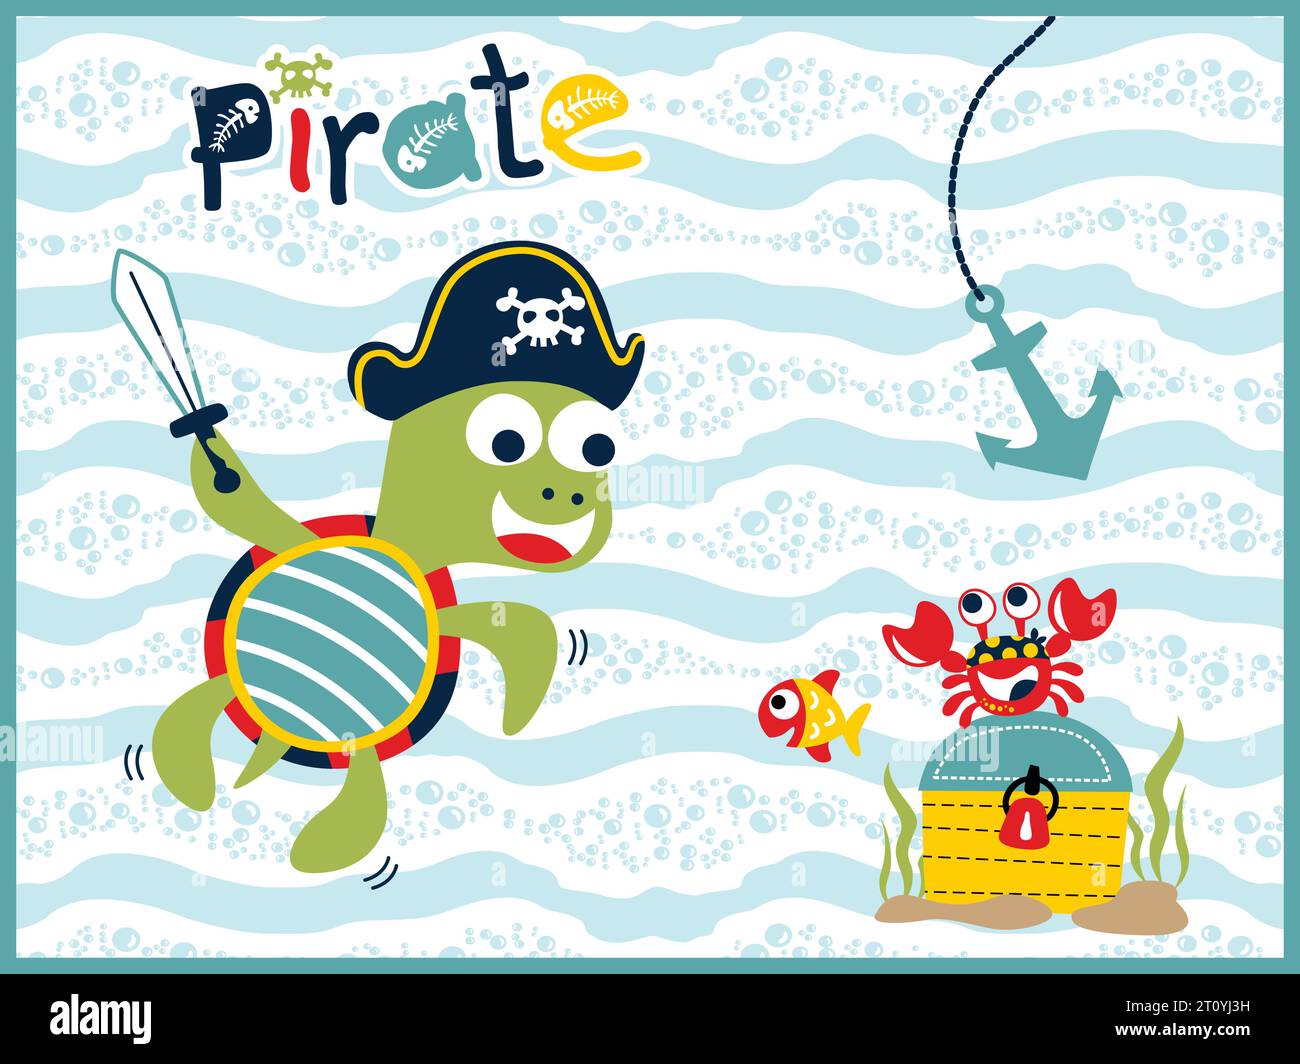 Dessin animé vectoriel d'animaux marins en costume de pirate avec coffre au Trésor, illustration d'élément sous-marin Illustration de Vecteur